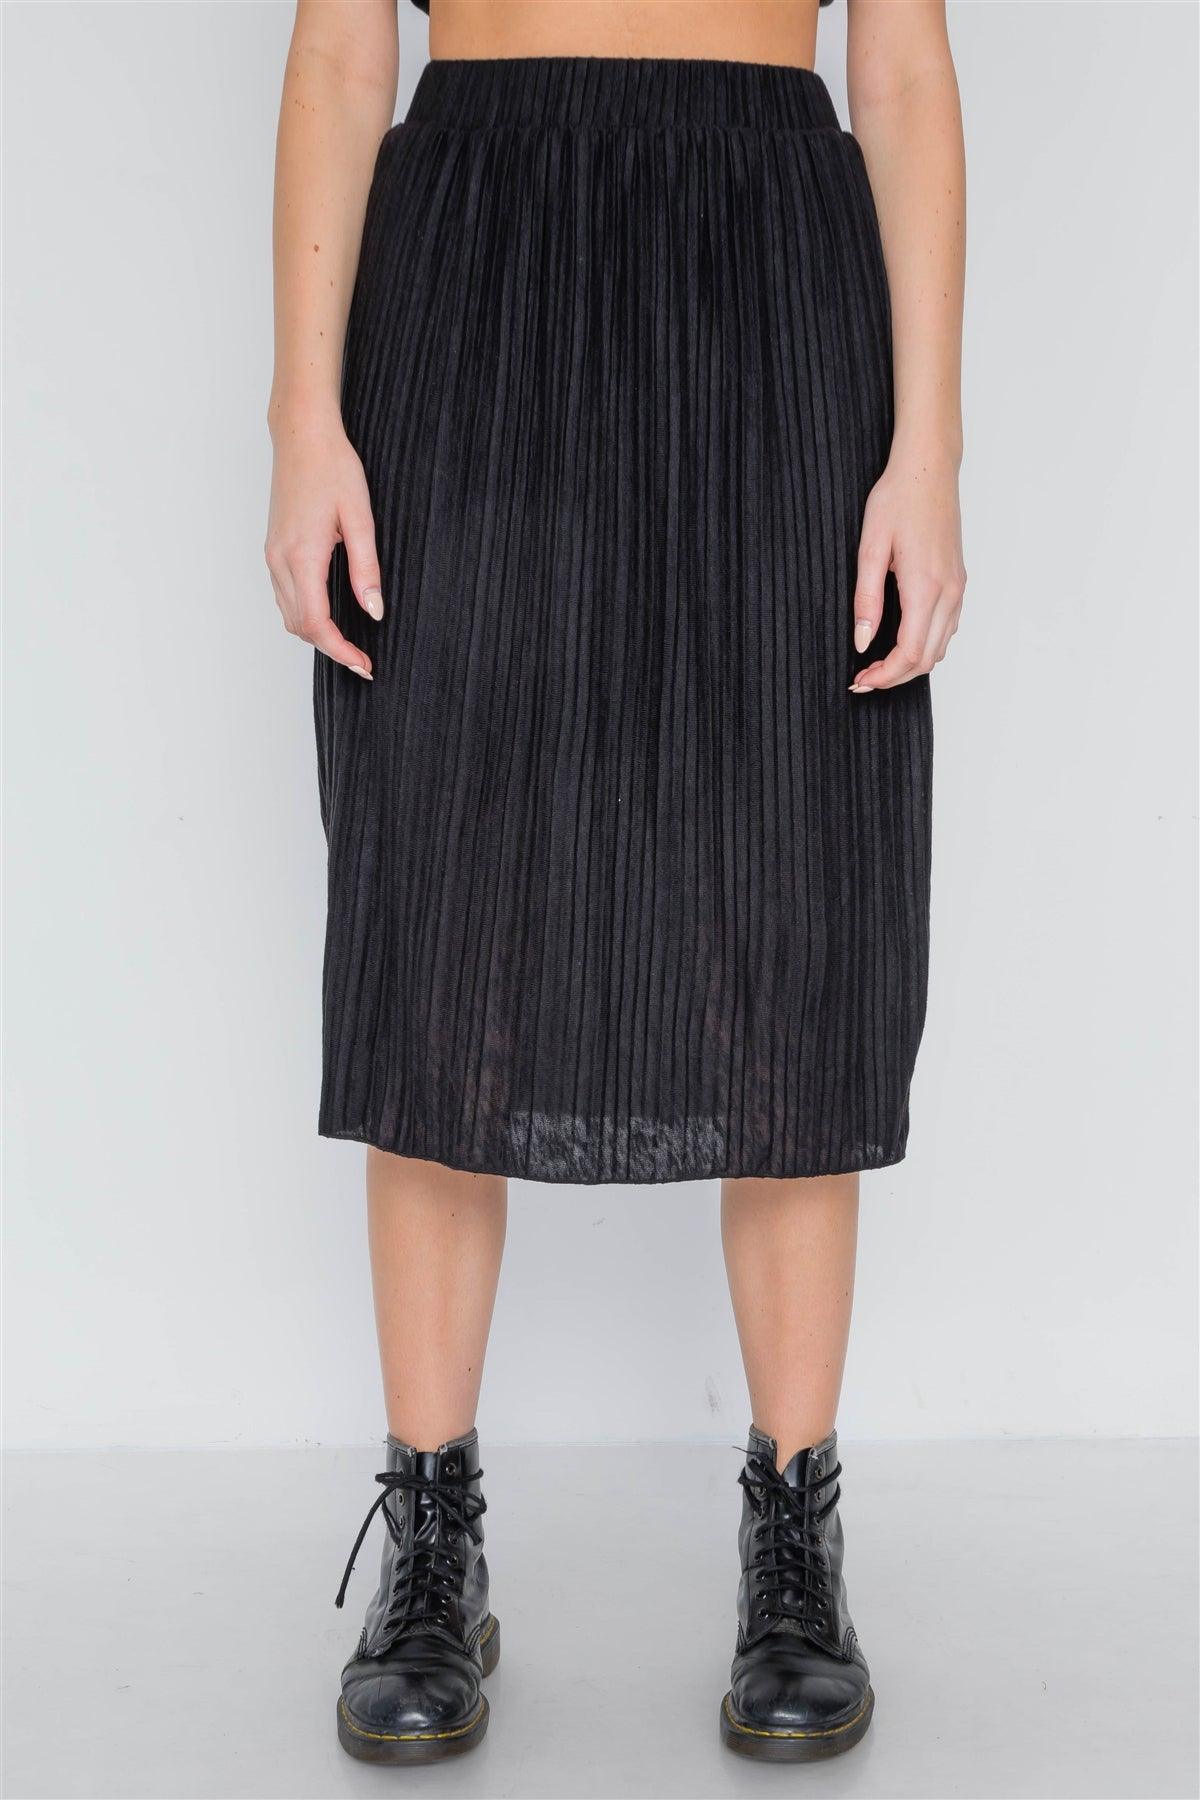 Black Knit Pleated High-Waist Midi Skirt /2-2-3